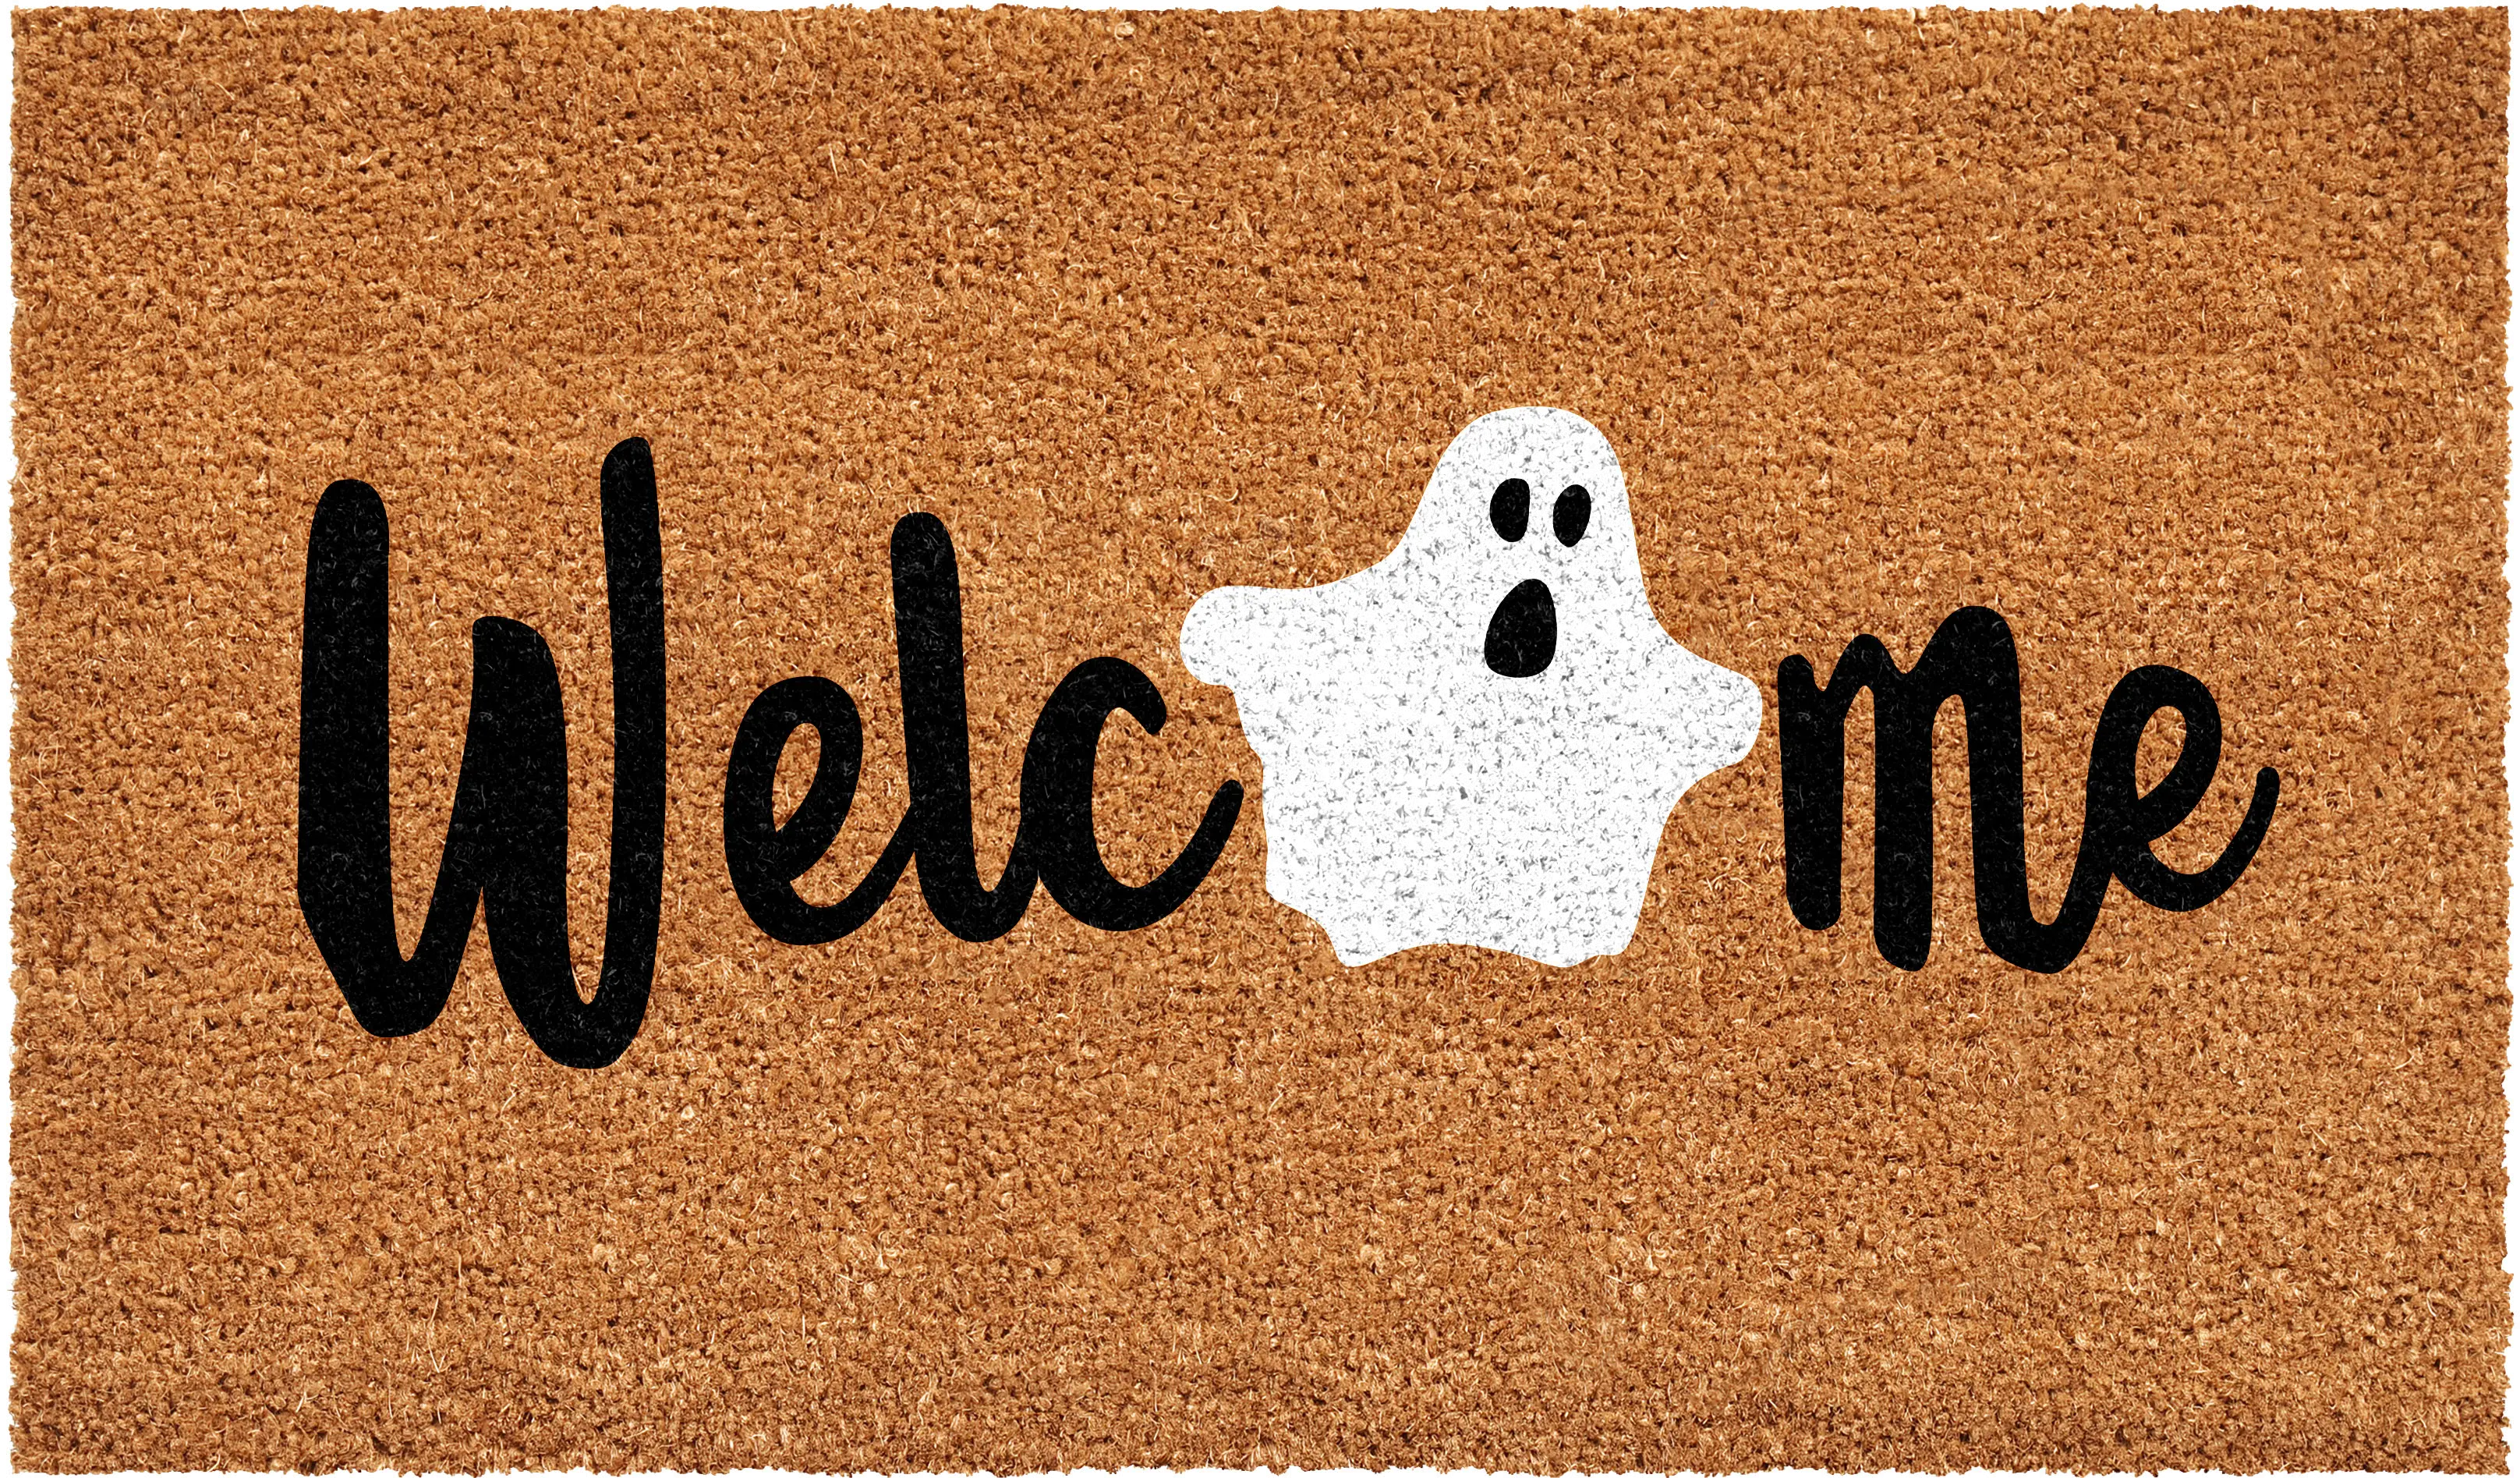 Welcome Ghost Doormat